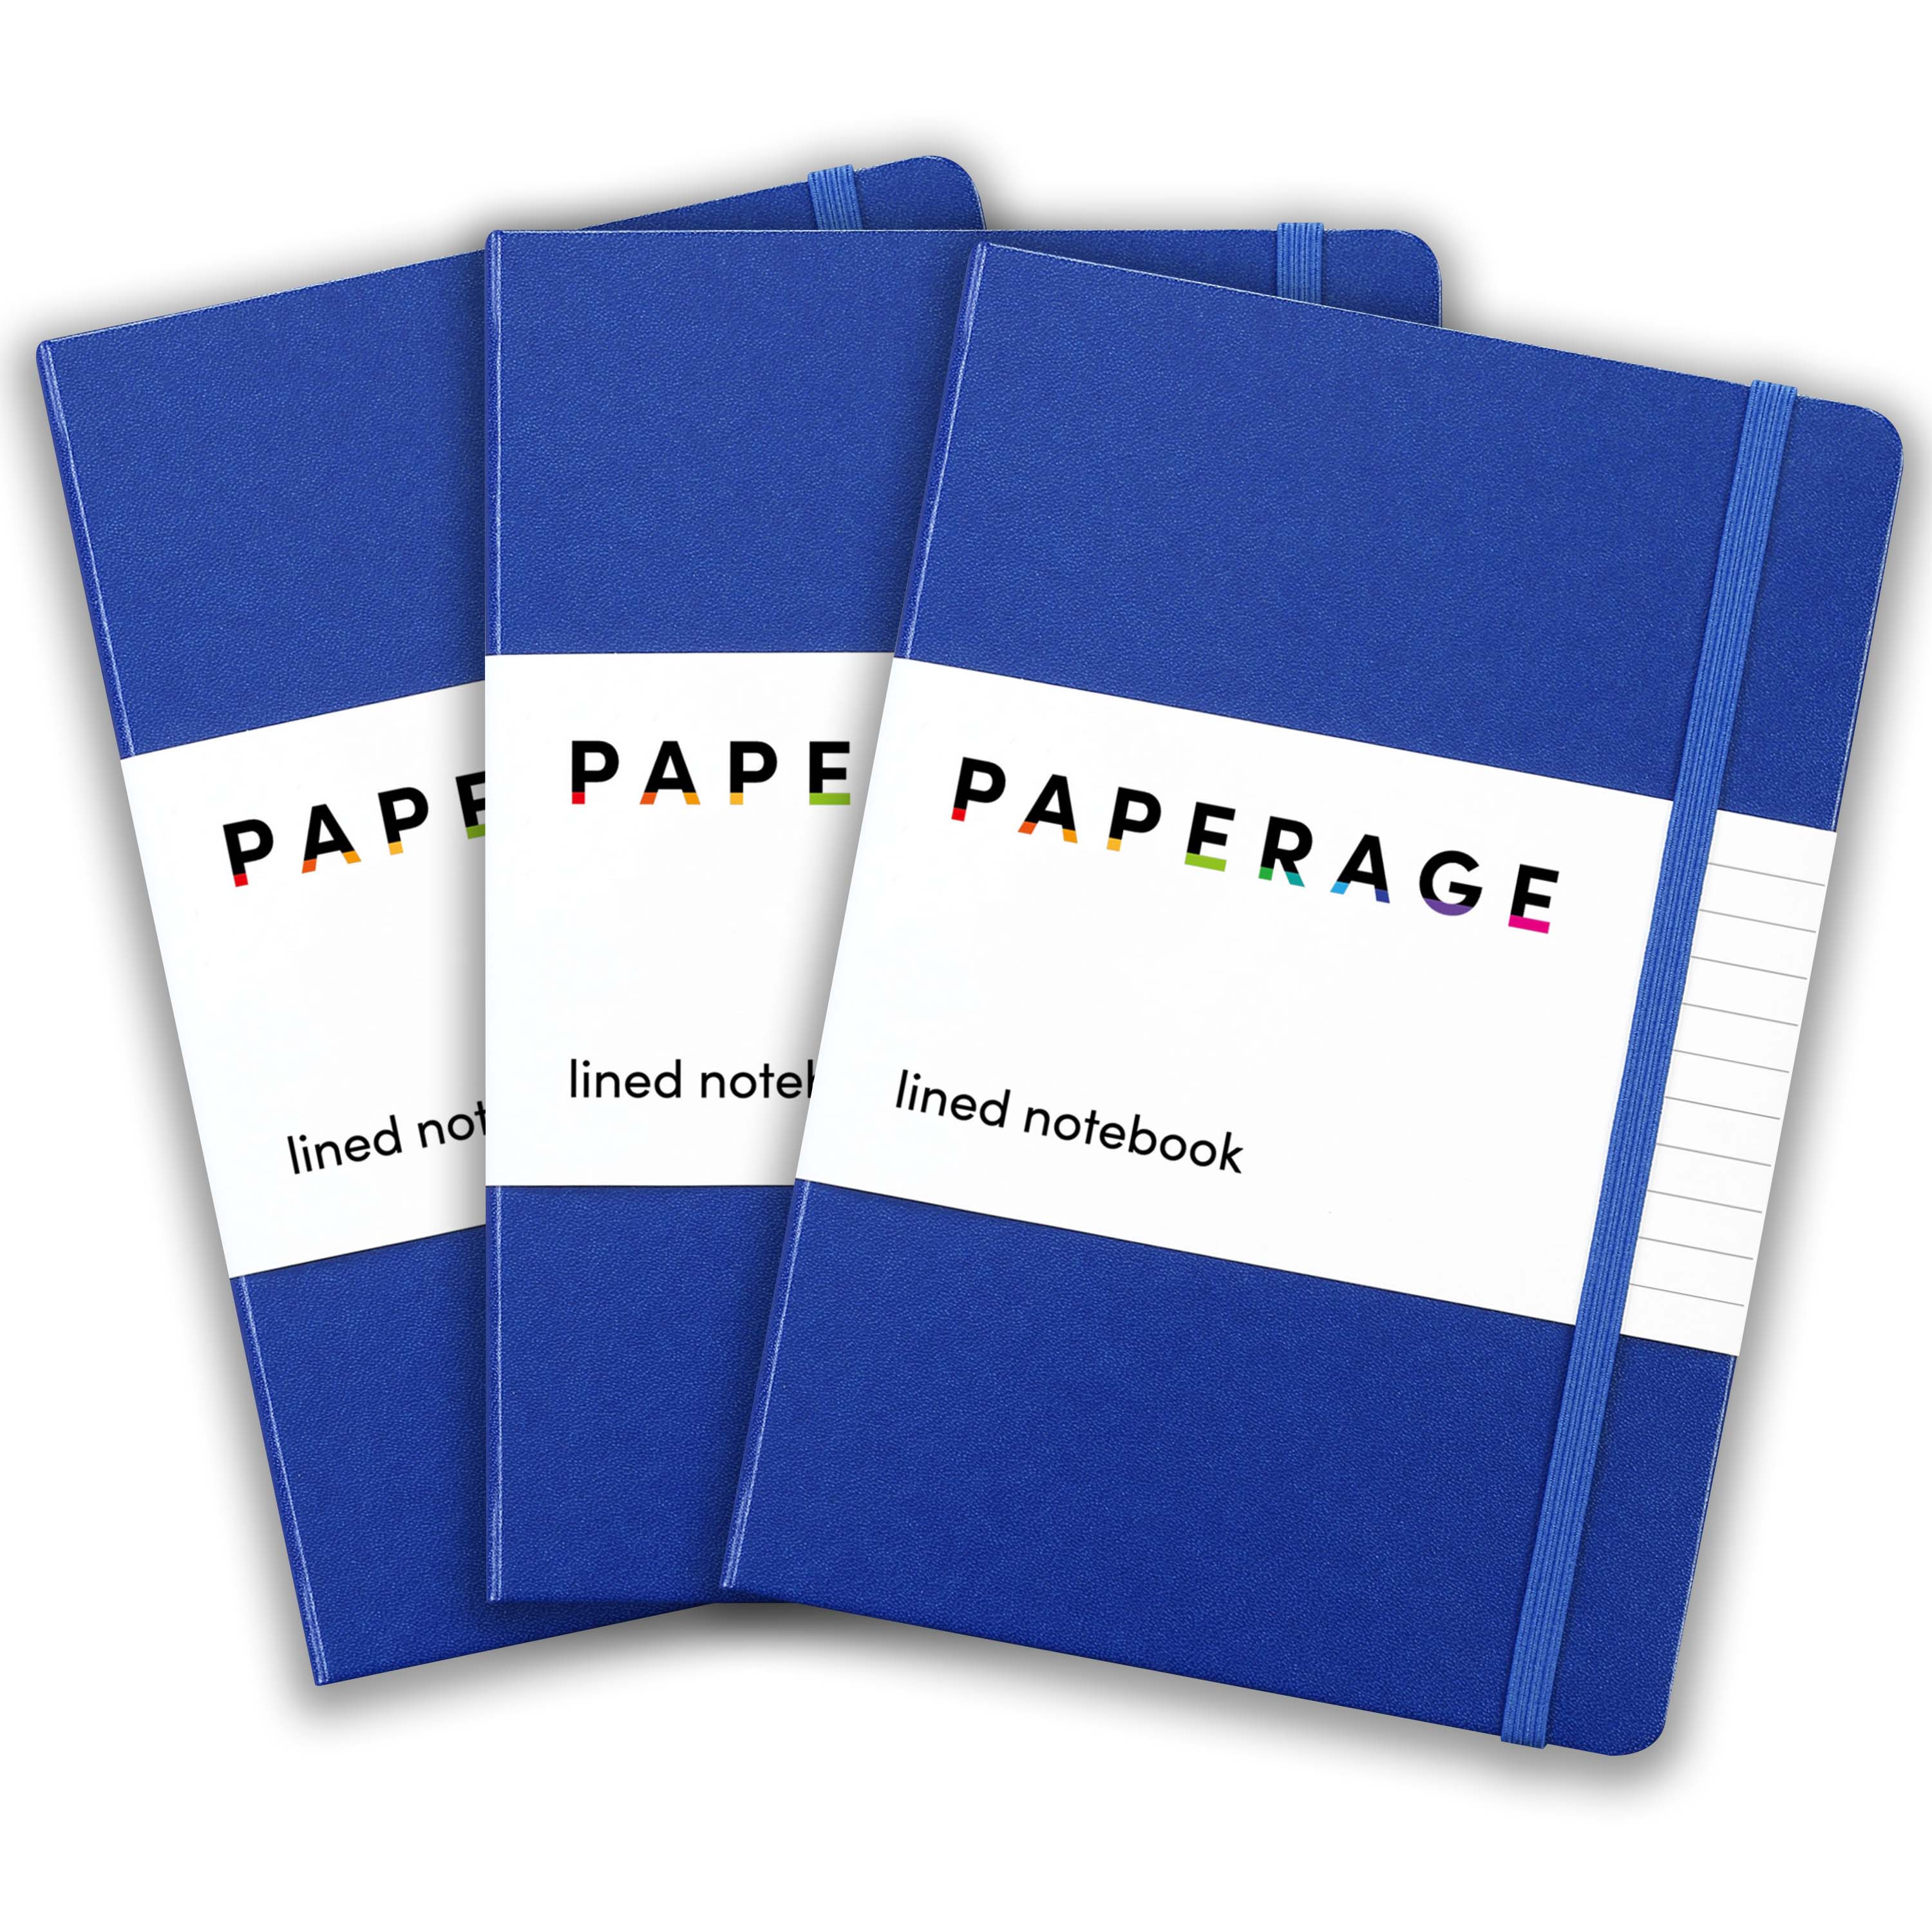 Paperage